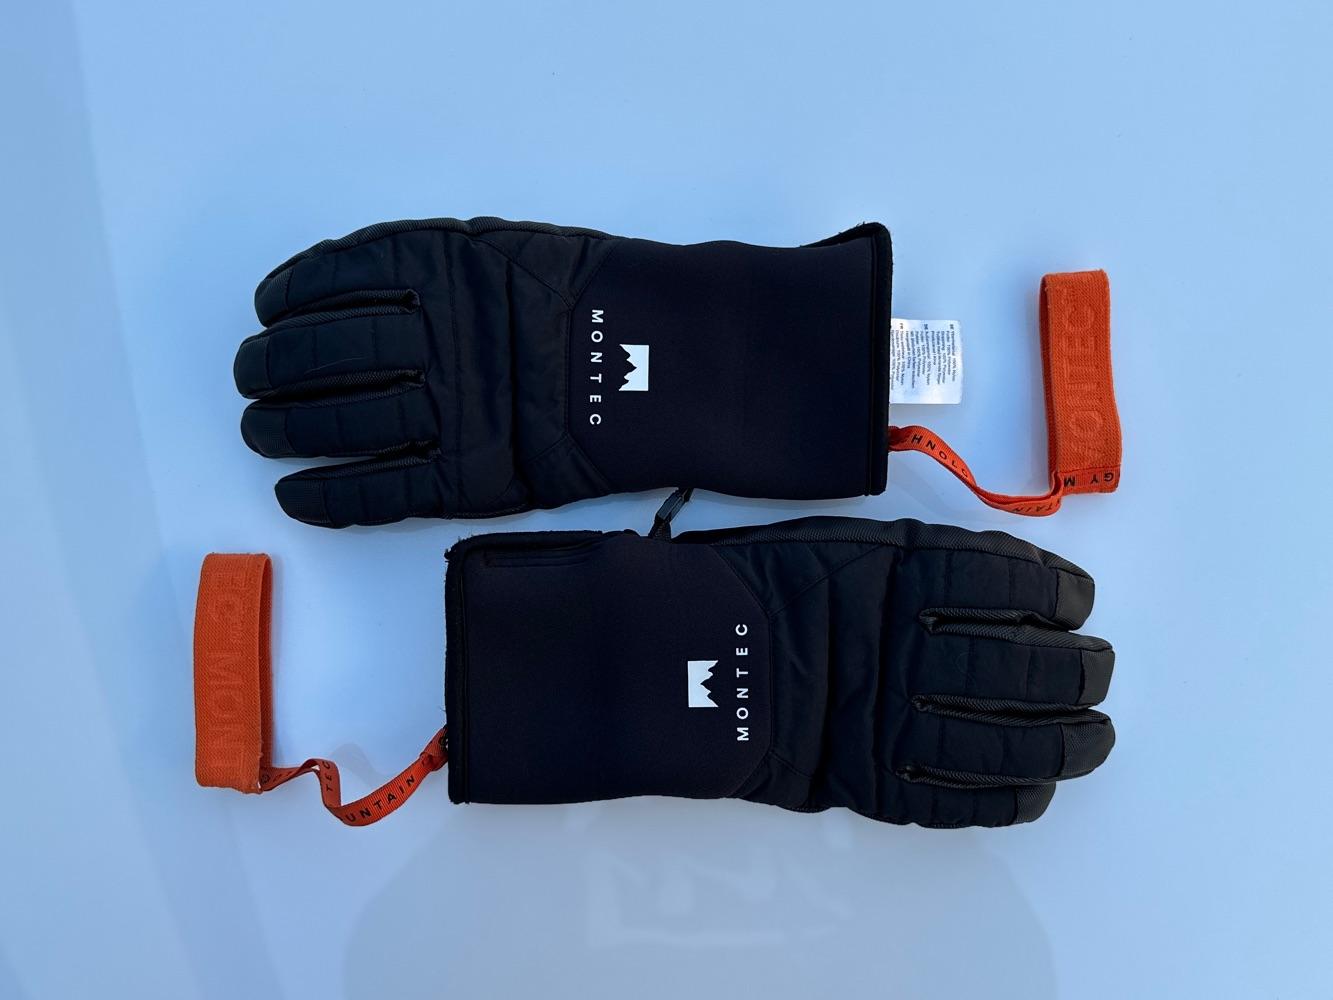 Kilo Men's Ski Gloves - Versatile Black, Medium